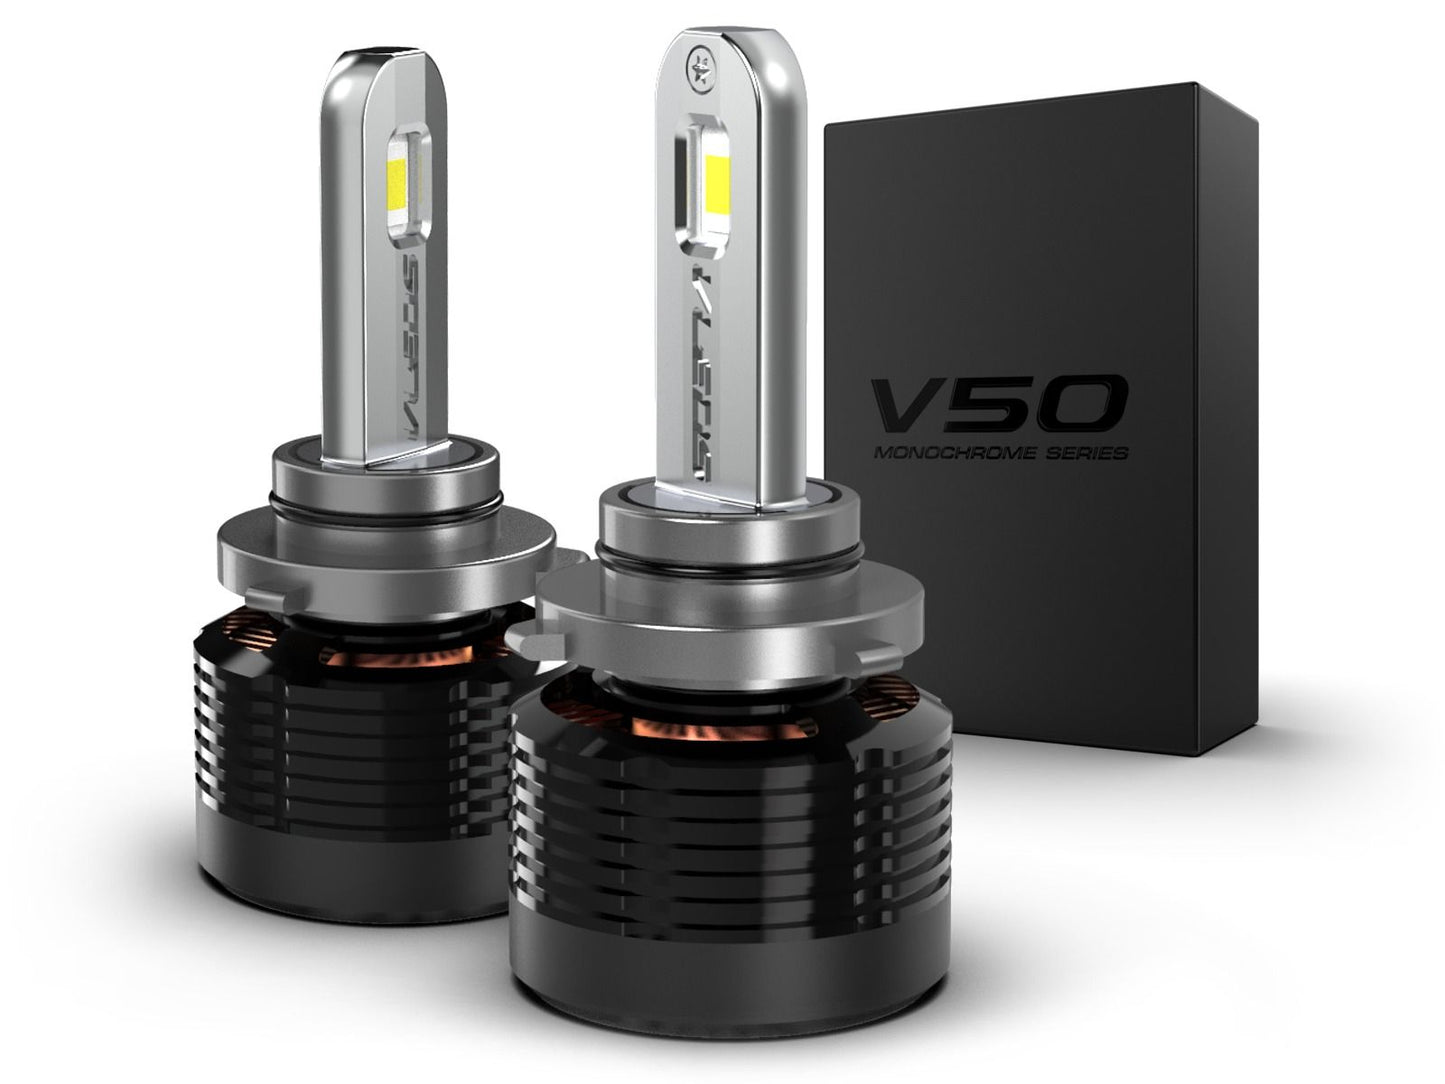 9012: VLEDS V50 Monochrome Series